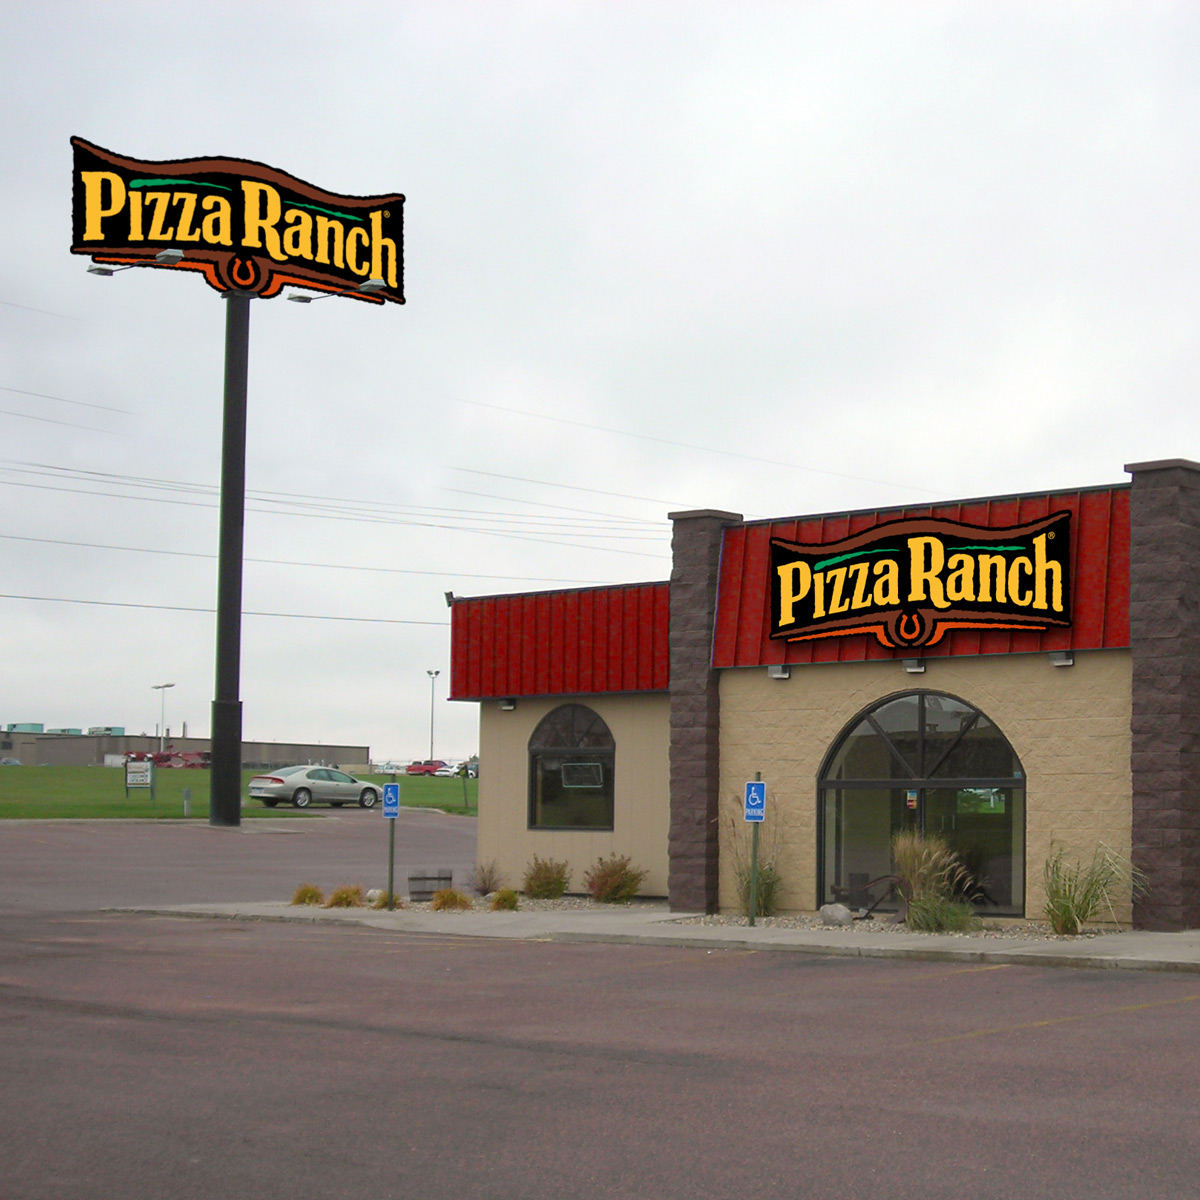 2007 Pizza Ranch Store Rebrand